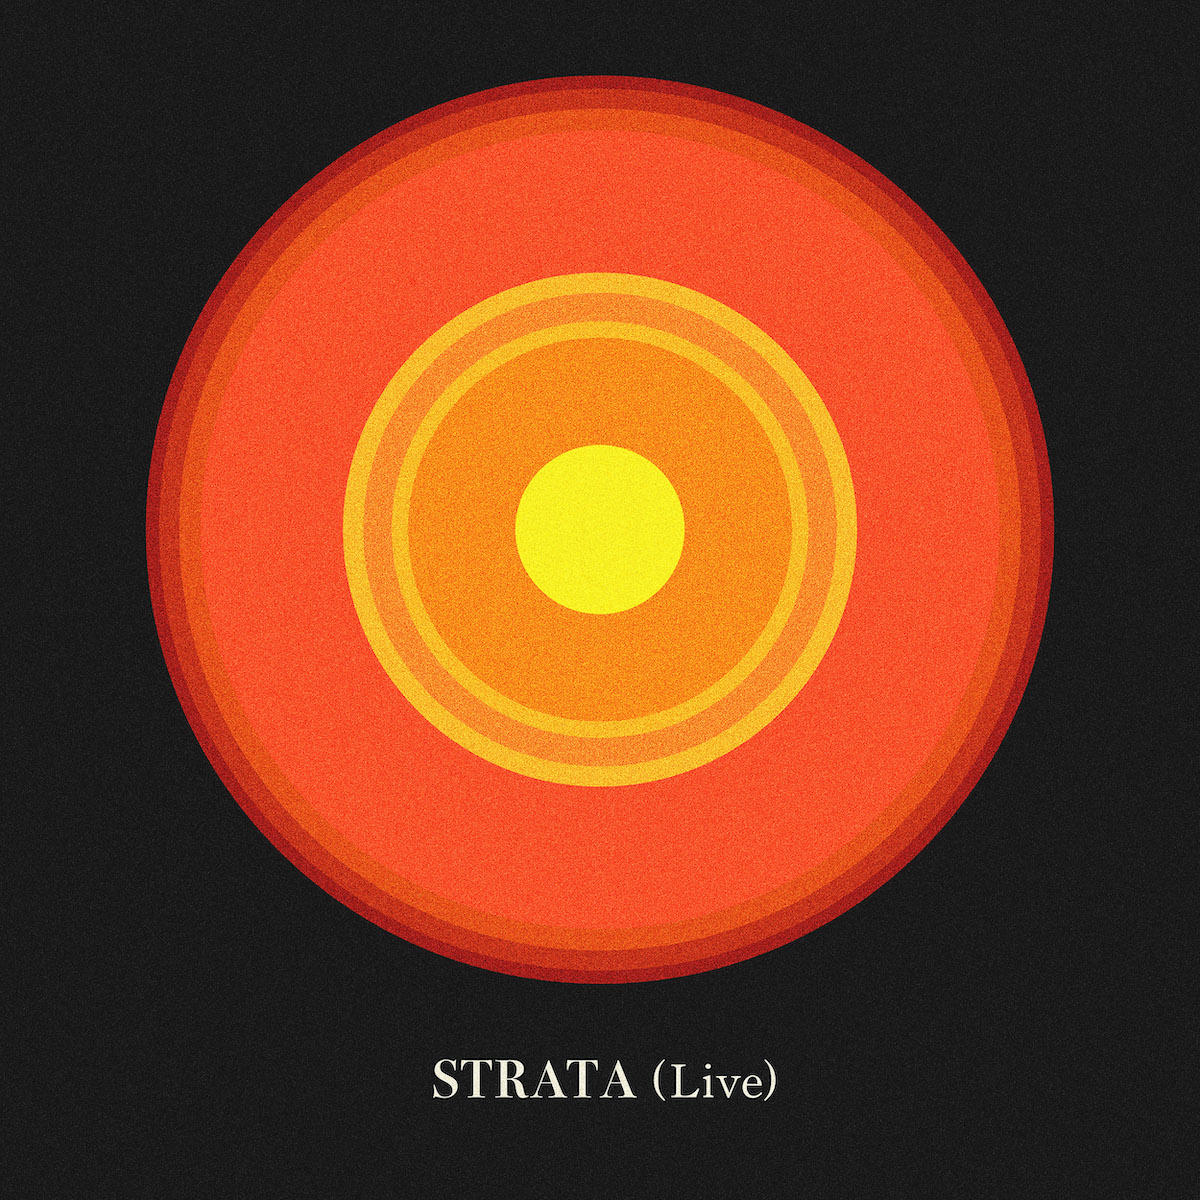 7thアルバム『STRATA』のライブバージョンをリリースしました。